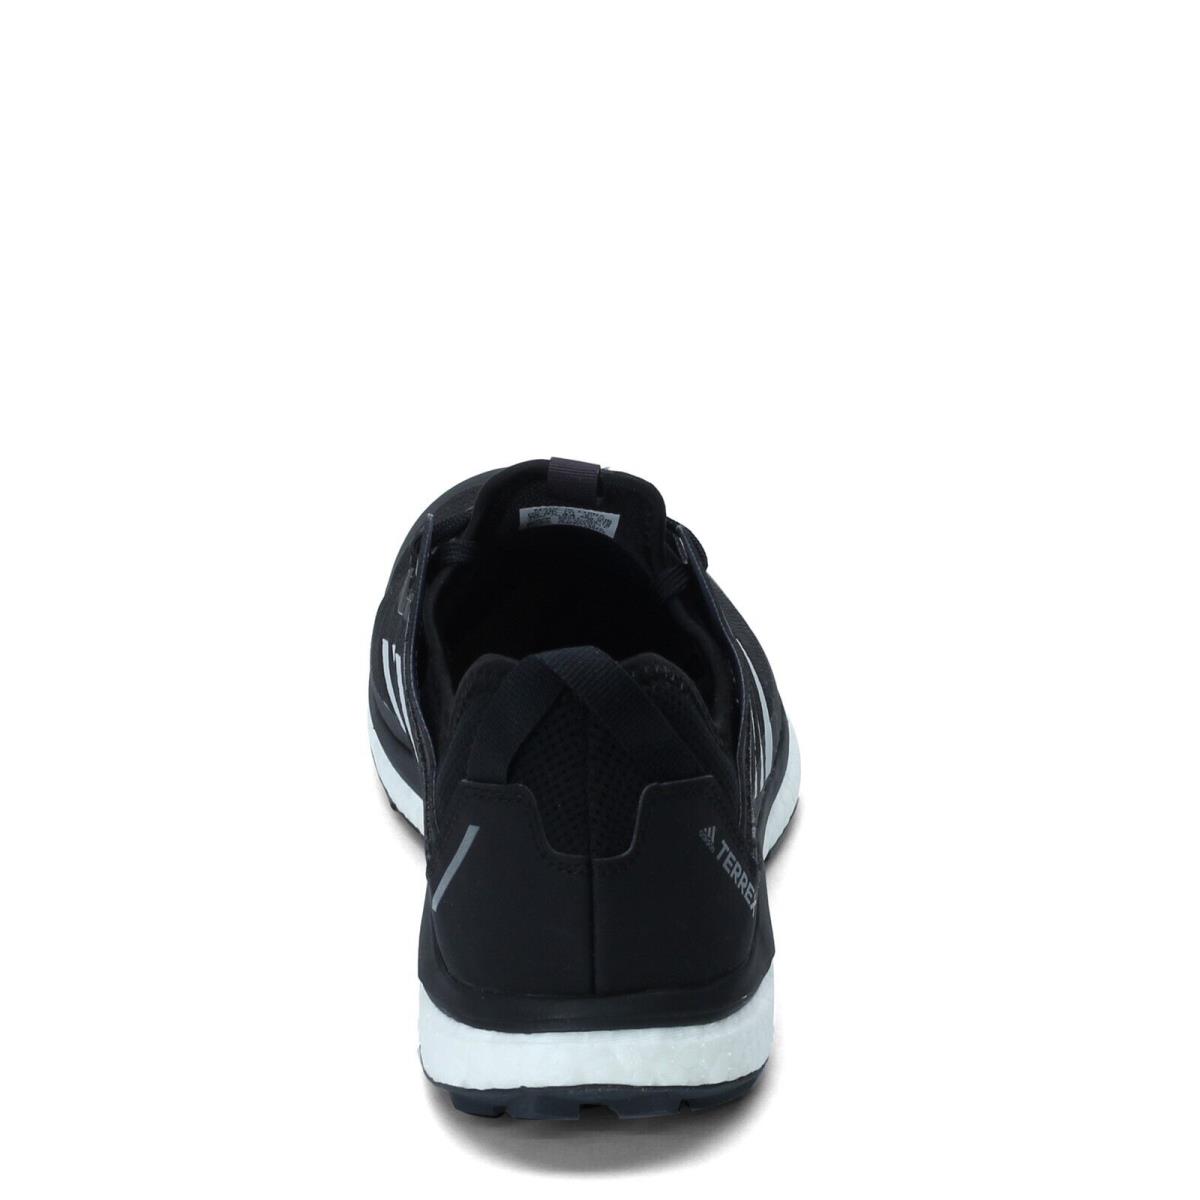 Adidas shoes TERREX Agravic Flow - Black/Grey/White 3